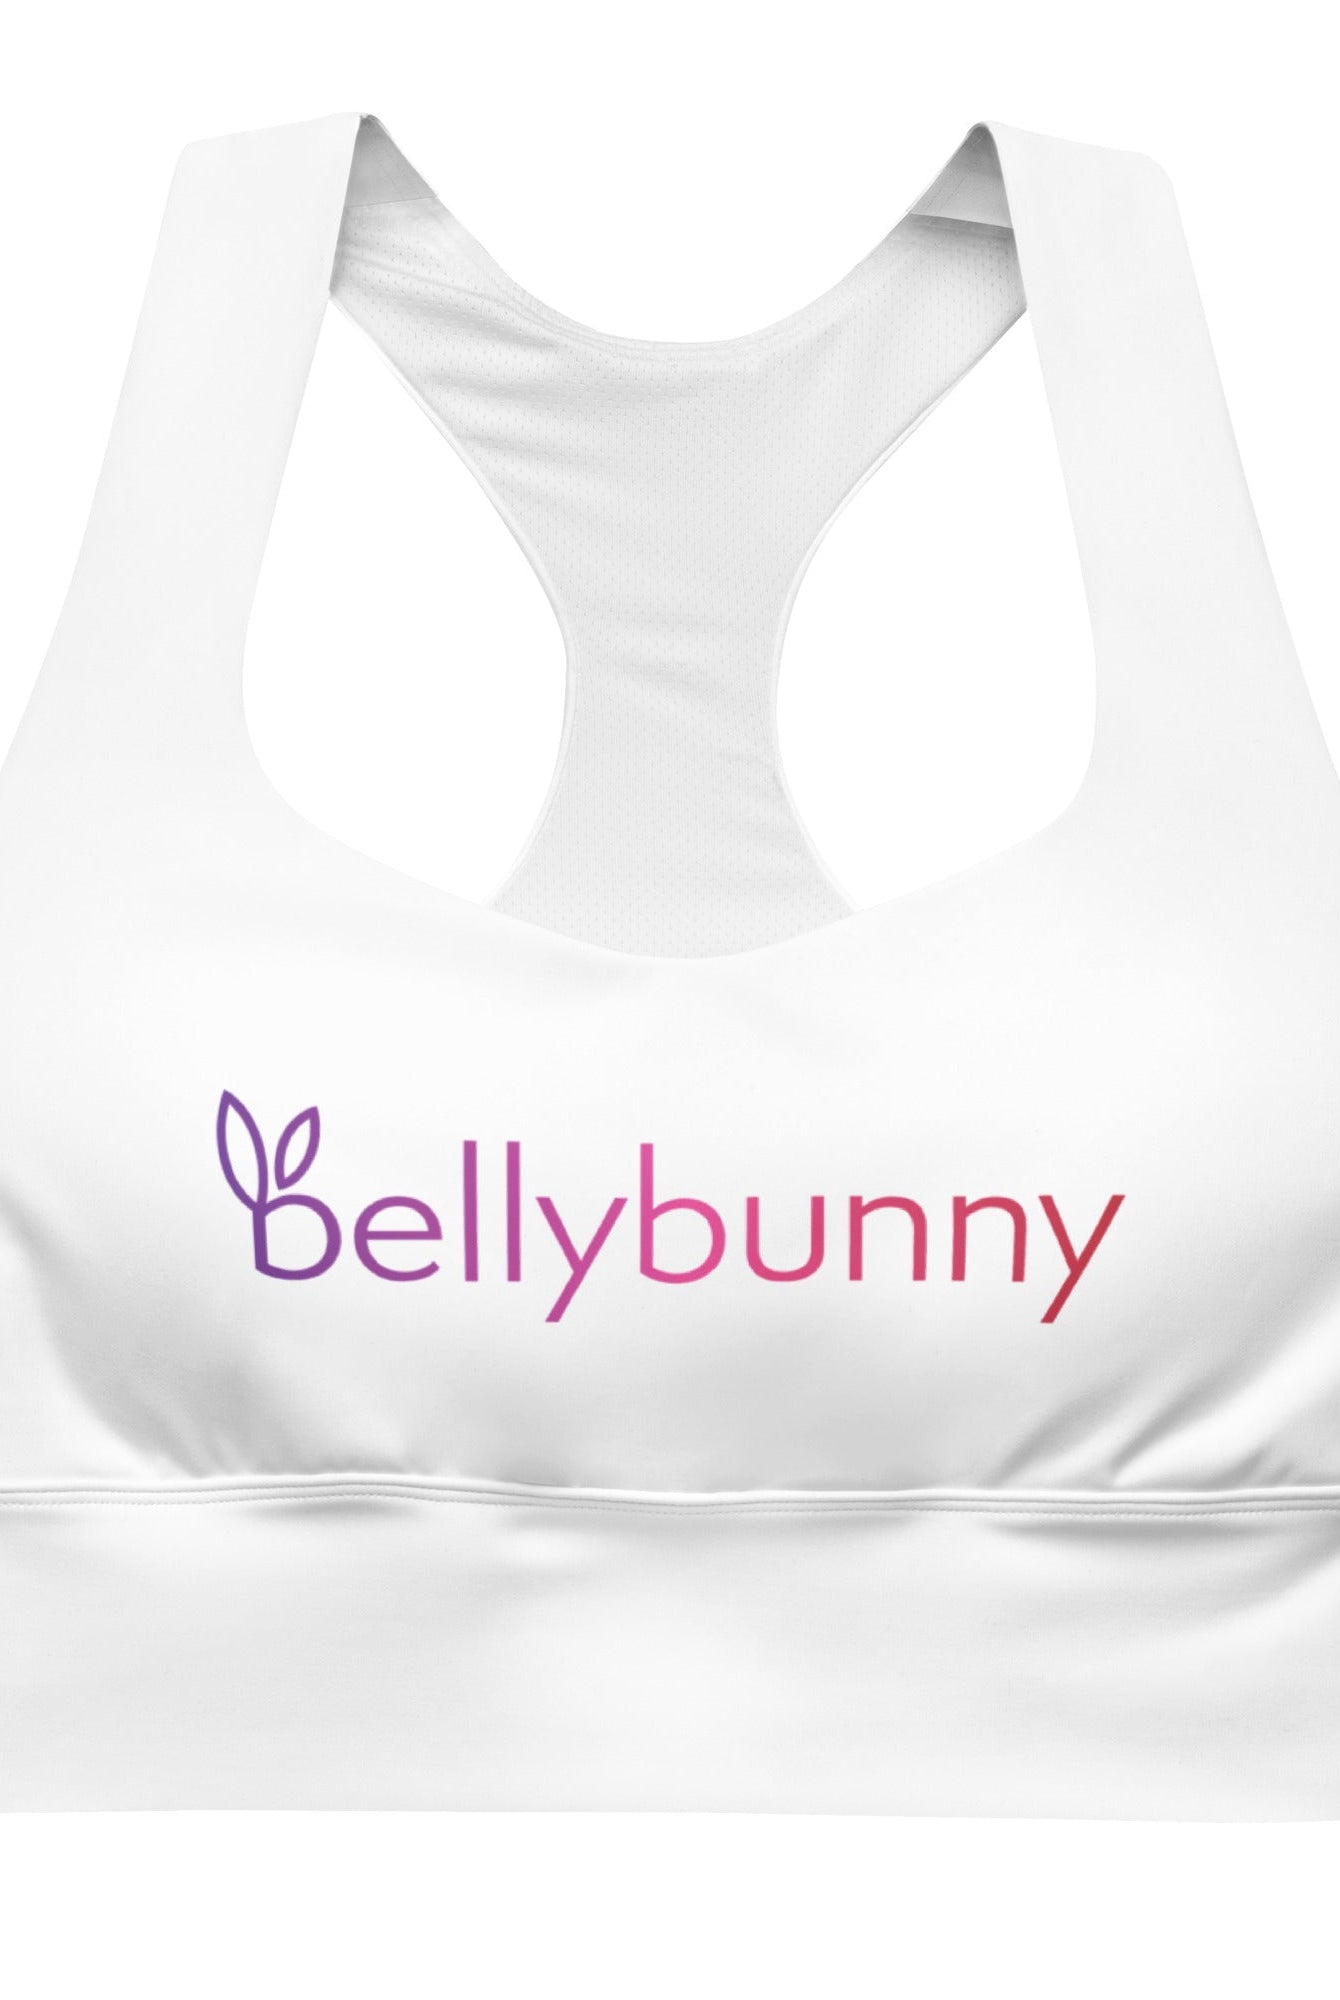 Bellybunny-Women's Longline Sports Bra-White with Rainbow Logo